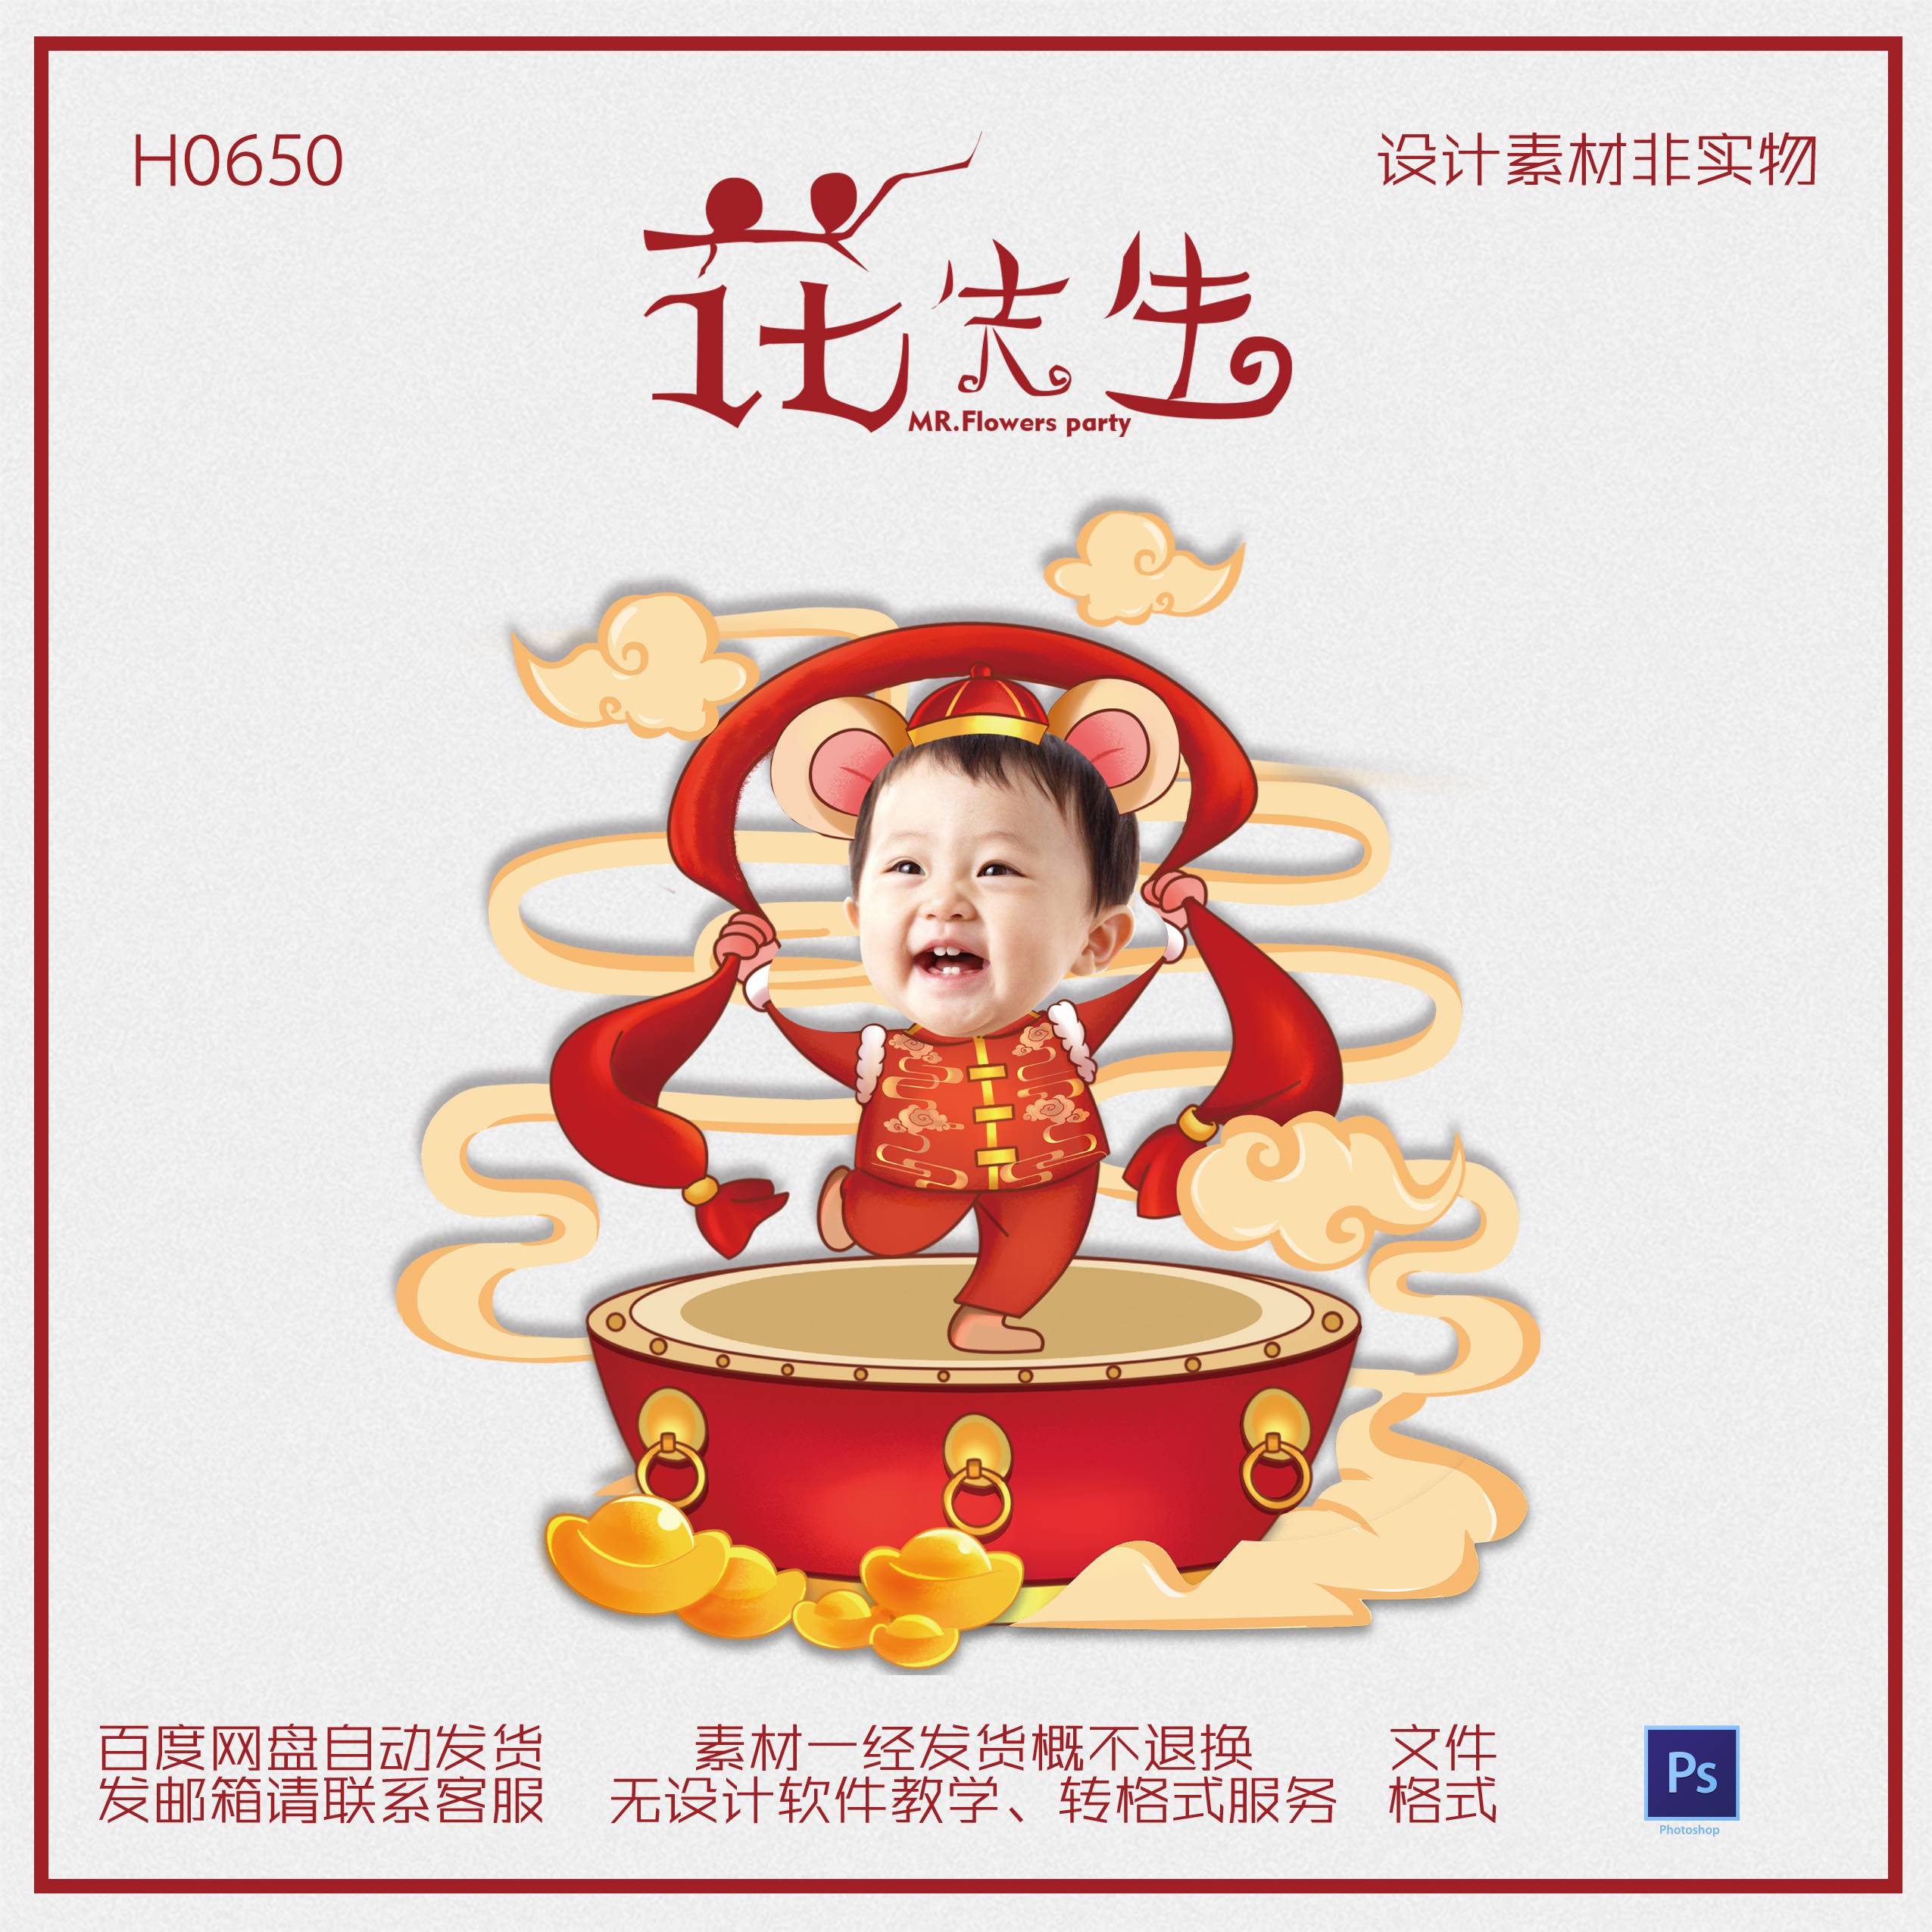 卡通形象无头小人立牌大头贴中国风男孩宝宝生日迎宾牌抠头素材